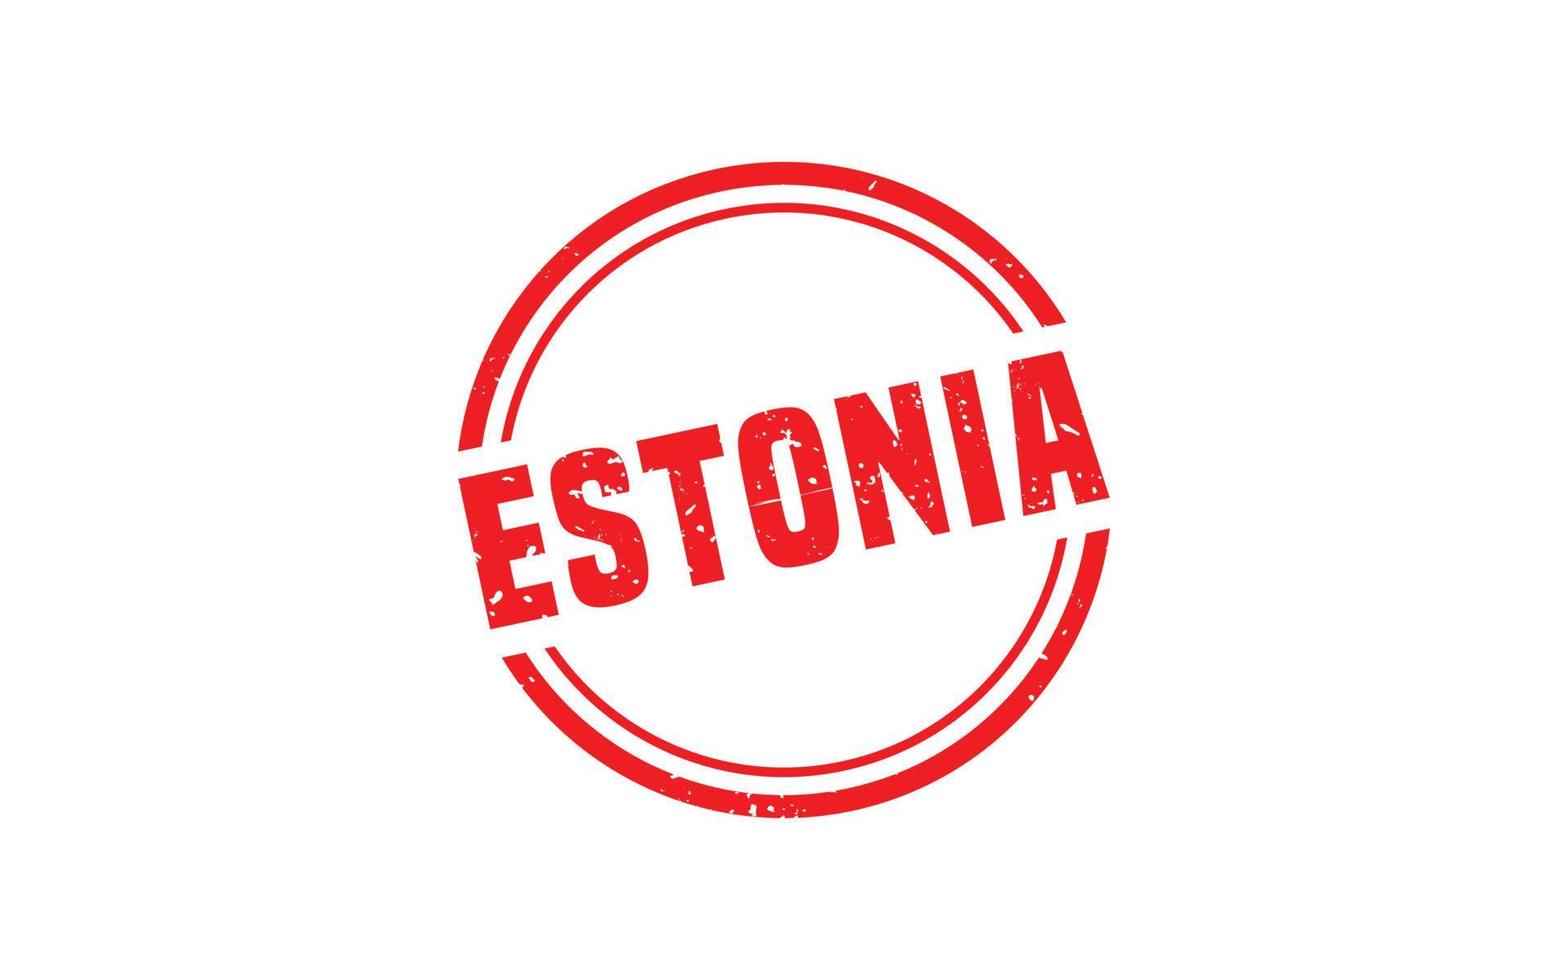 goma de sello de estonia con estilo grunge sobre fondo blanco vector